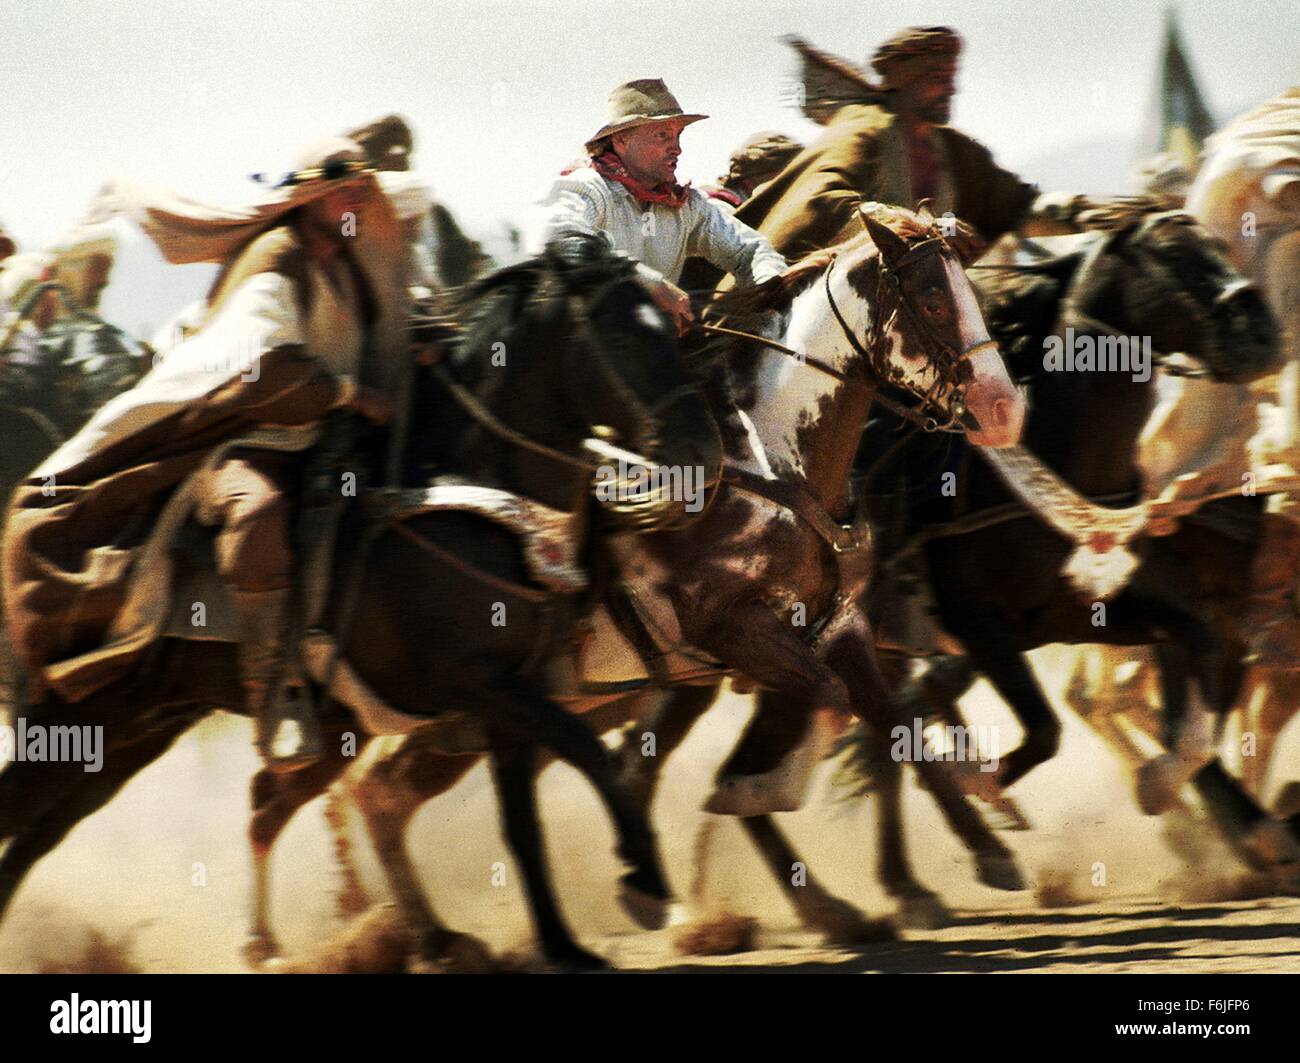 Fecha de lanzamiento: 5 de marzo de 2004. Título de la película: Hidalgo.  Estudio: Touchstone Pictures. Parcela: En 1890, un abajo-y-out cowboy y su  caballo viaje a Saudita compiten en un cruce